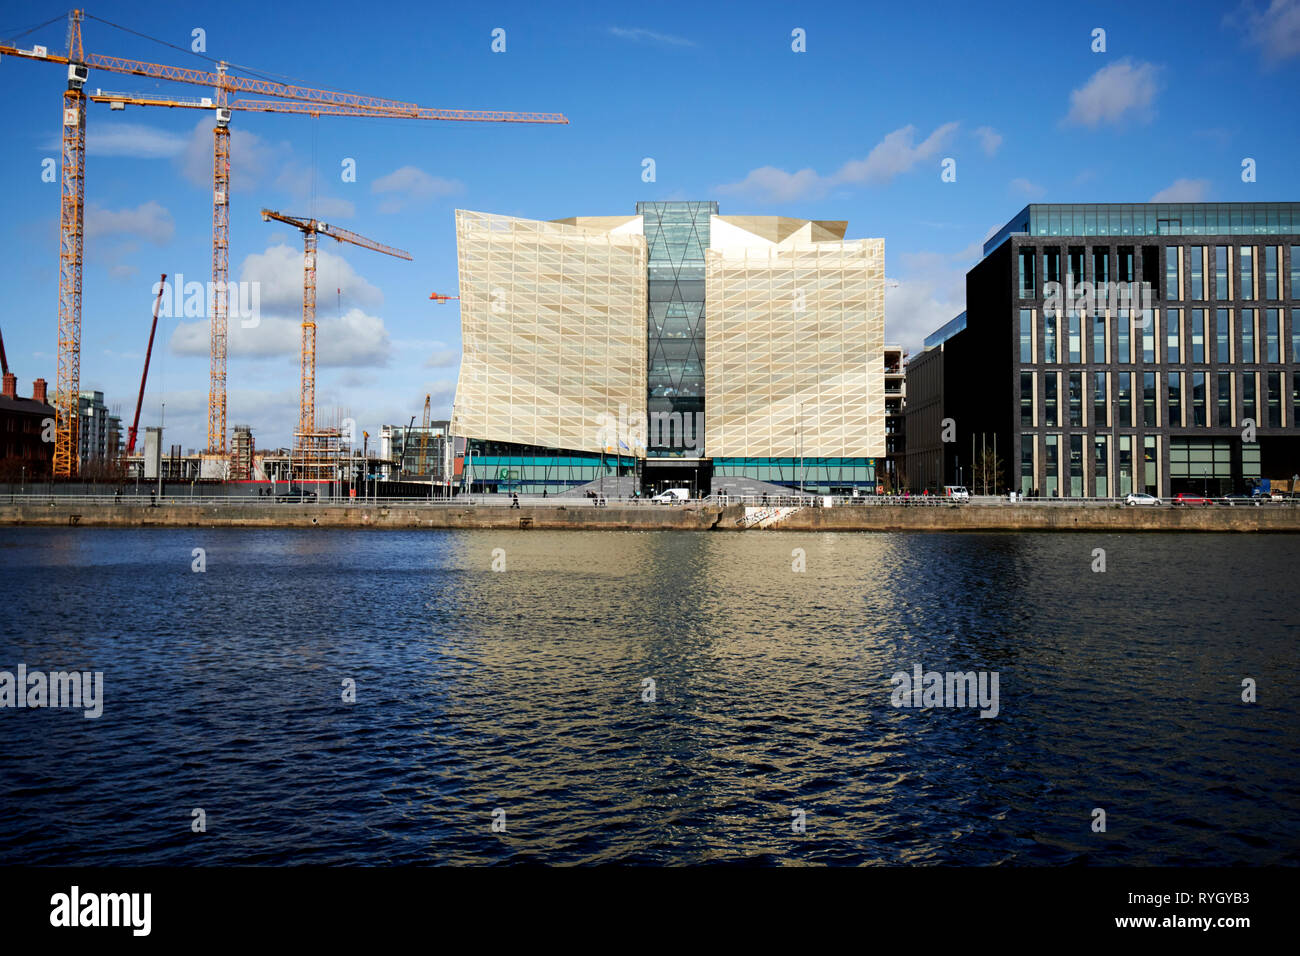 La Banca Centrale di Irlanda Head office sul nuovo wapping street e 1 sbarchi Dublin North Wall Quay a Dublino Repubblica di Irlanda Foto Stock